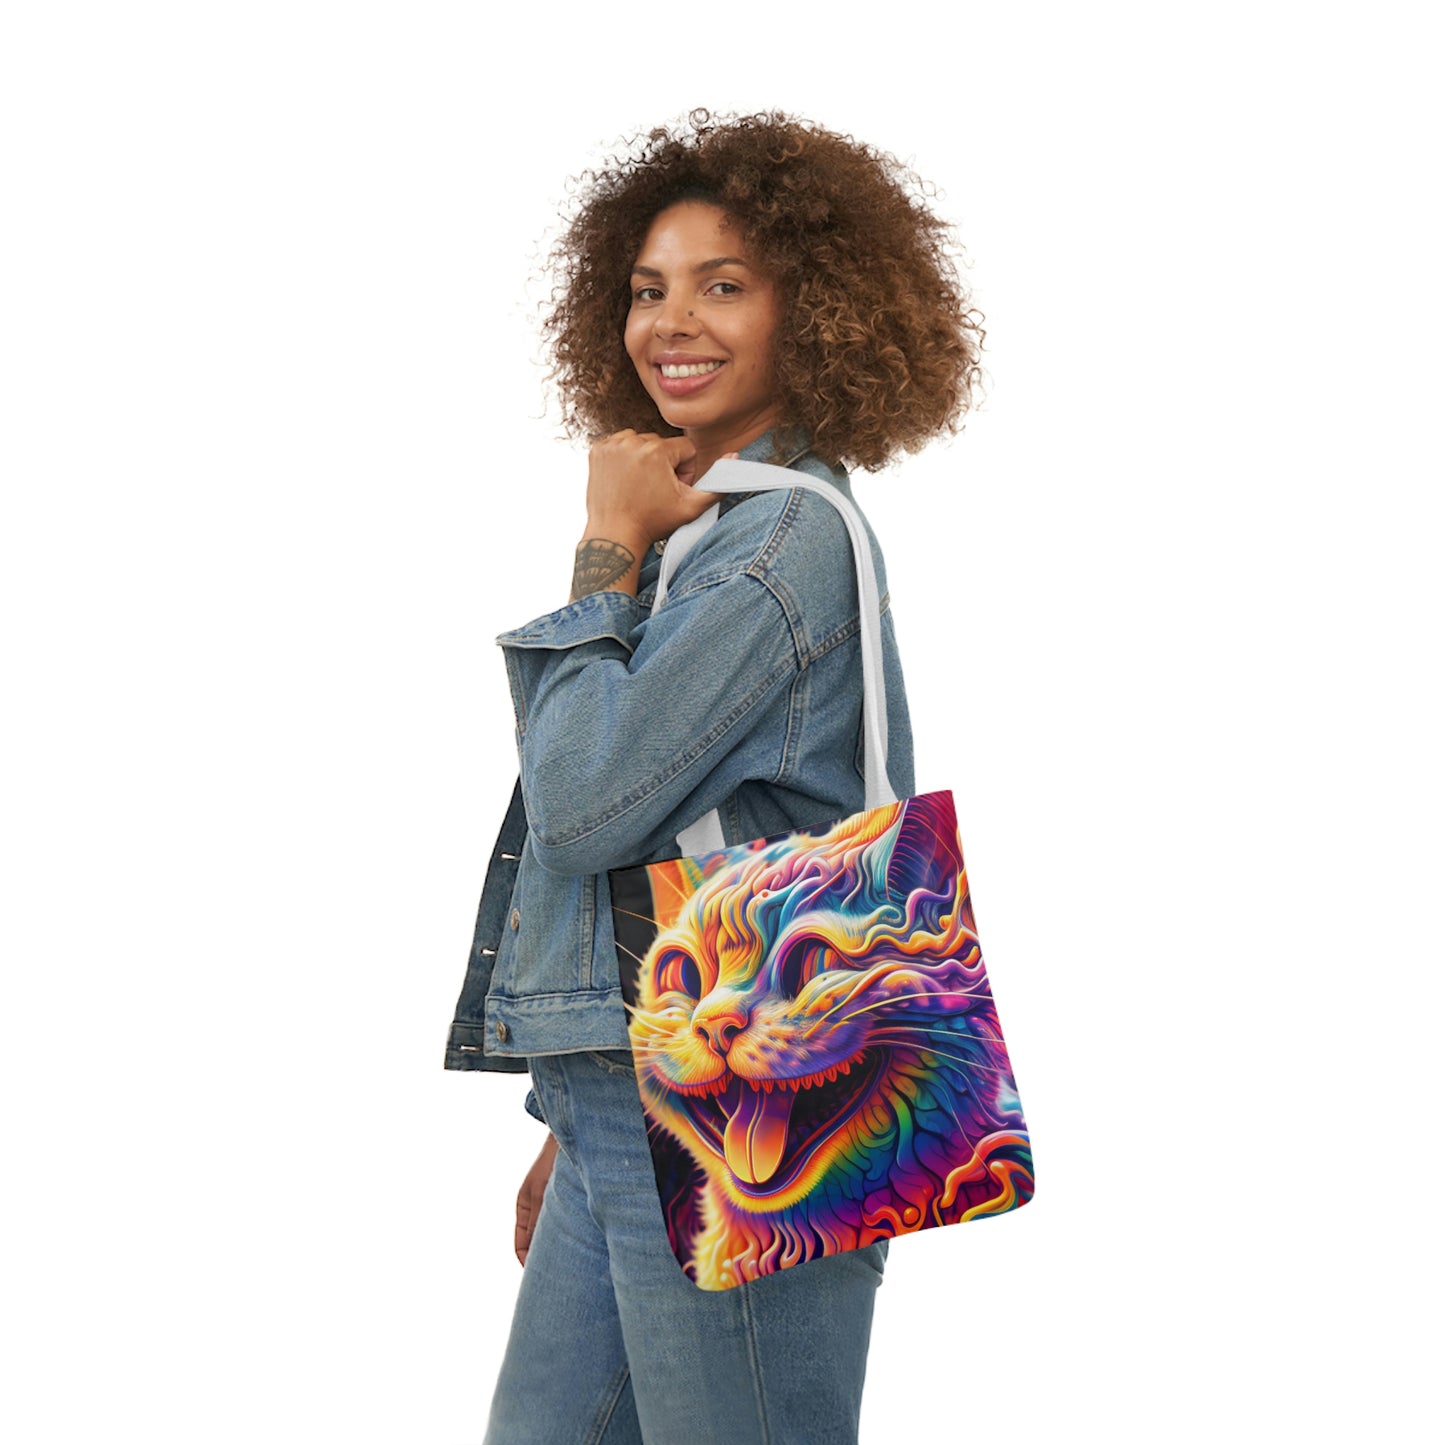 Acid Cat Canvas Tote Bag